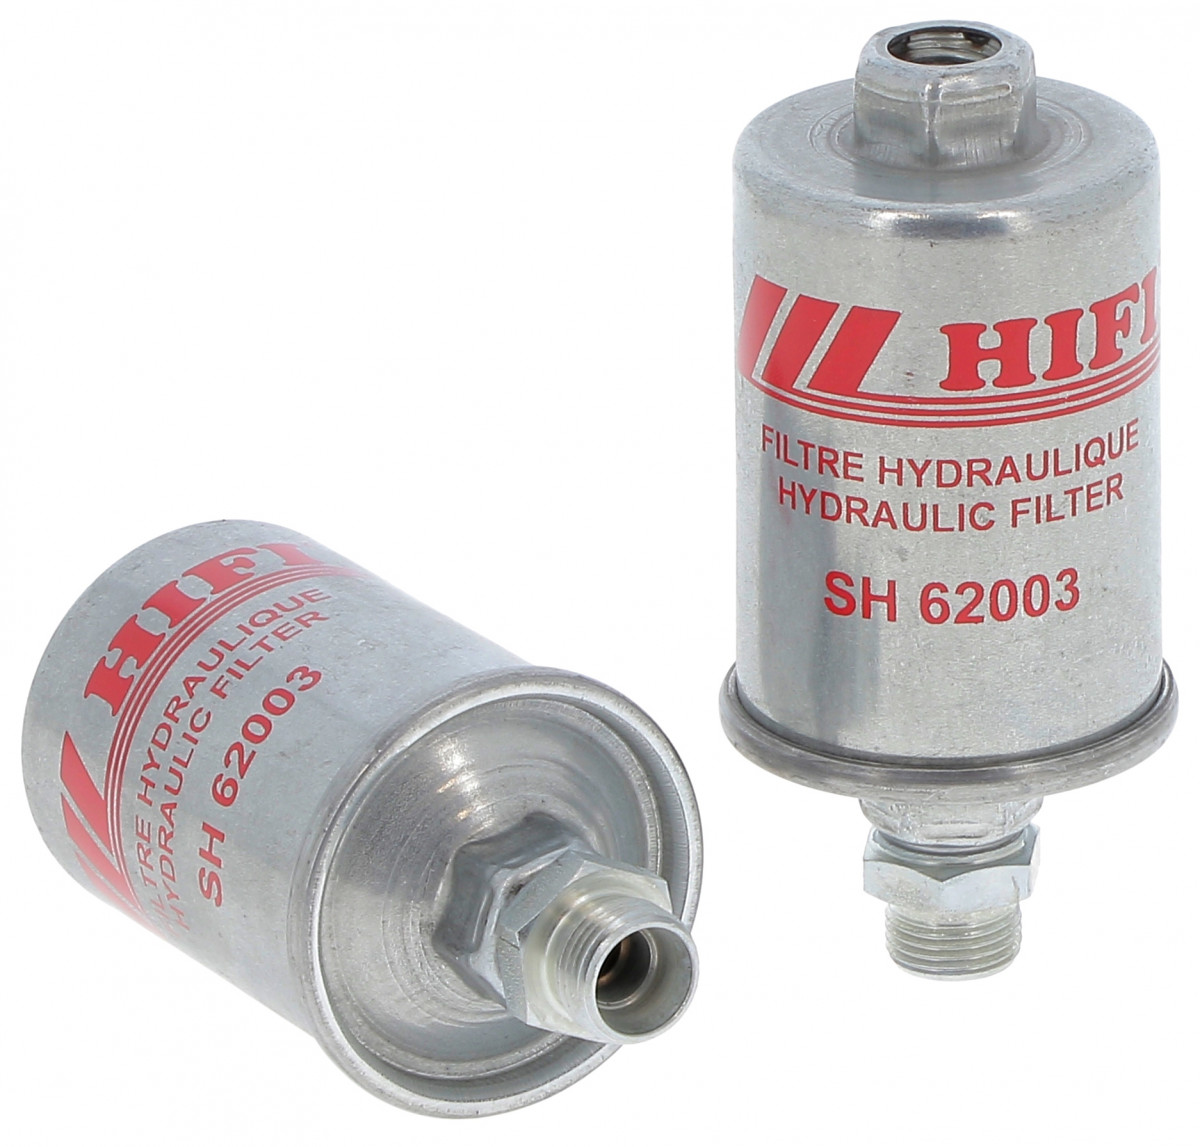 Filtr hydrauliczny  SH 62003 do JOHN DEERE 2440